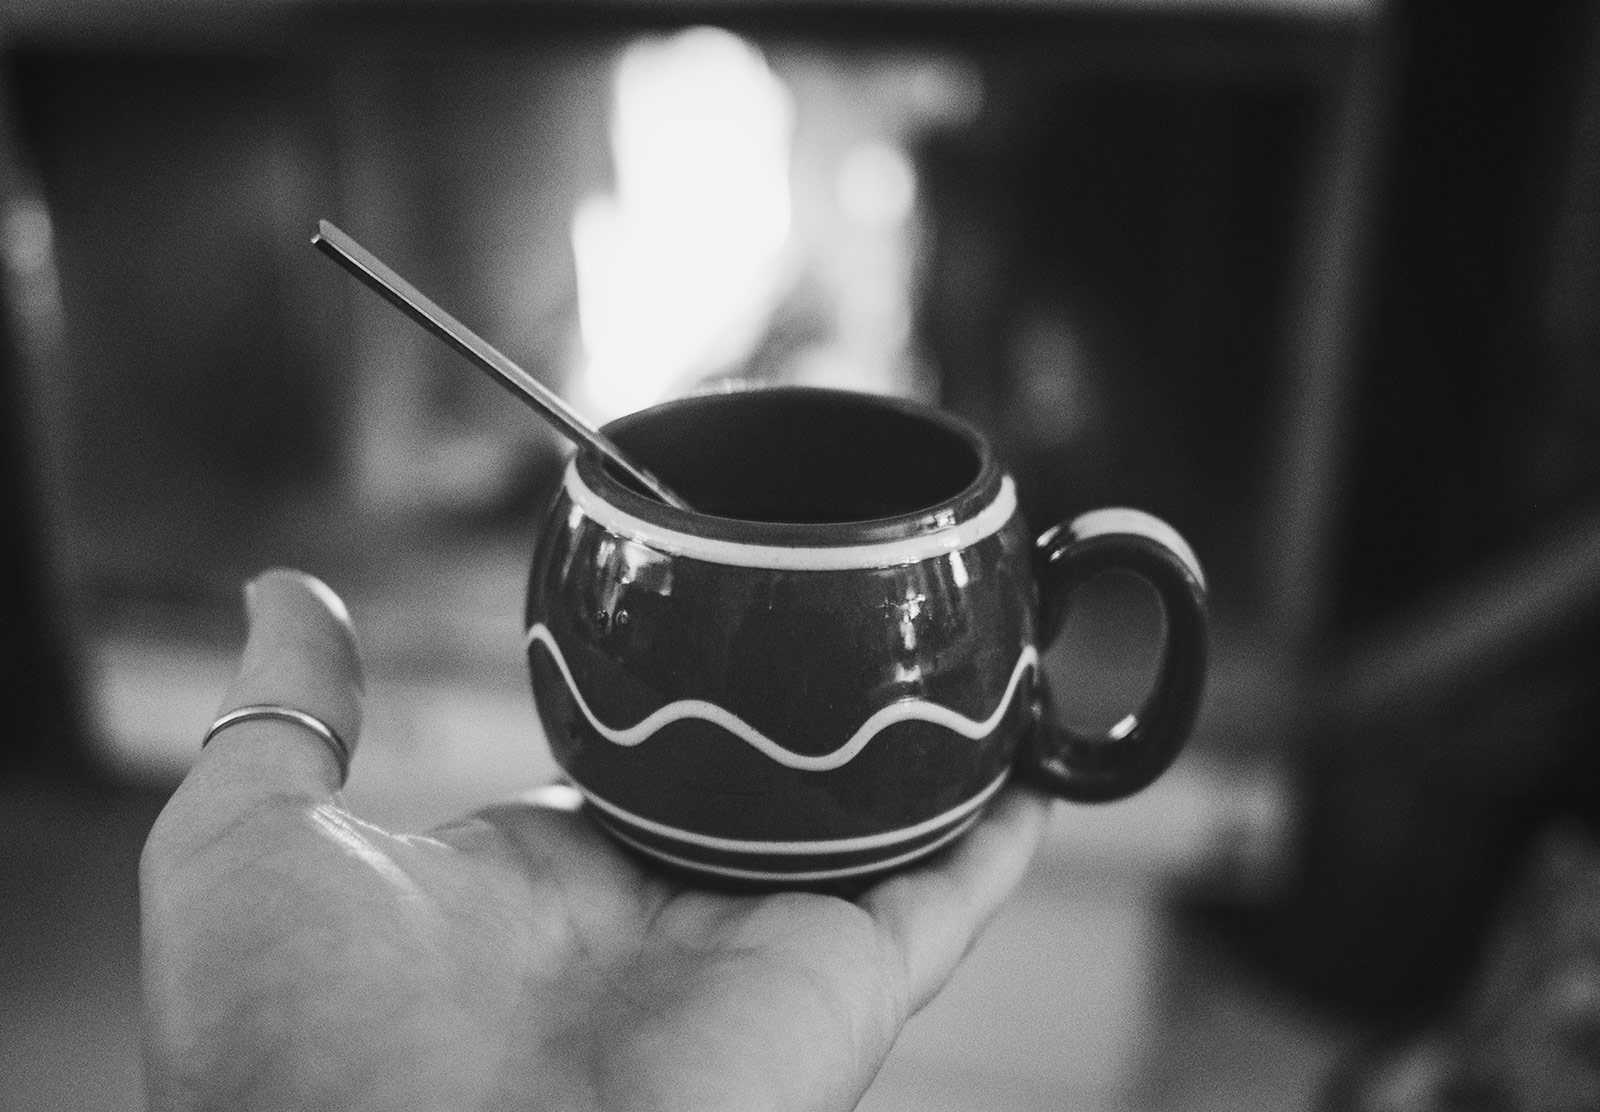 Small mug